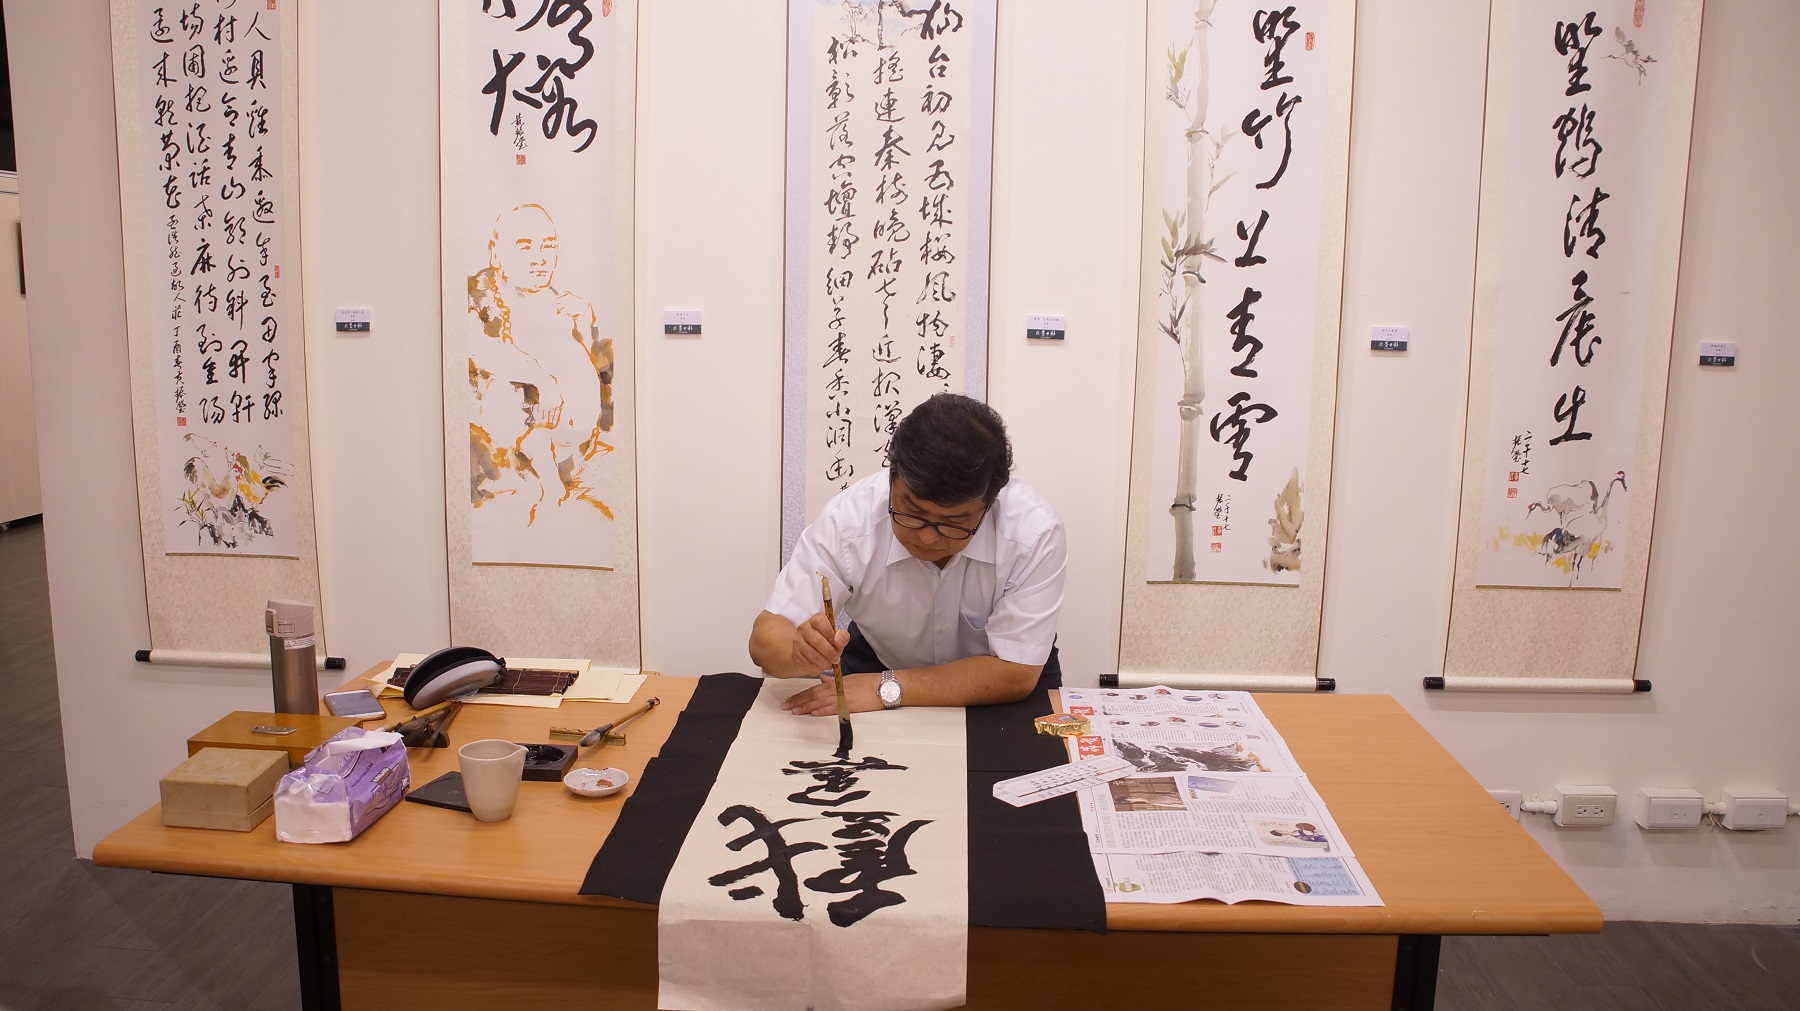 黃振瑩藝術家當場揮毫「戲墨用彩」四字以饗嘉賓，並與貴賓交流書畫創作心路歷程及藝術文化理念